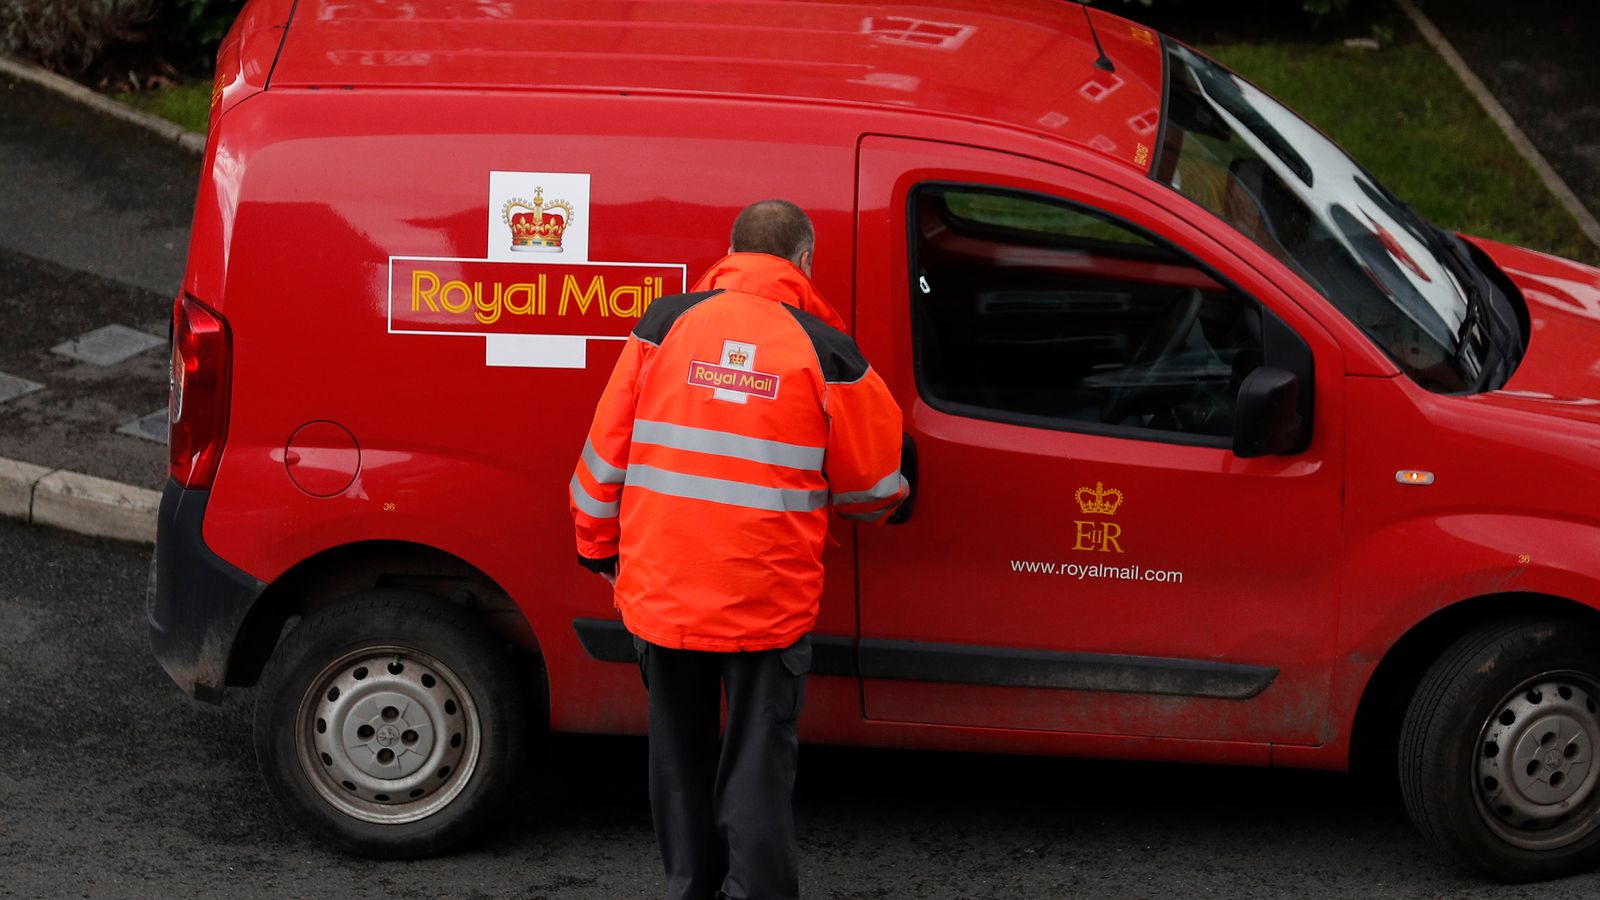 Pekerja Royal Mail melakukan pemogokan empat hari untuk menuntut ‘kenaikan gaji yang adil dan bermartabat’ |  Berita Inggris